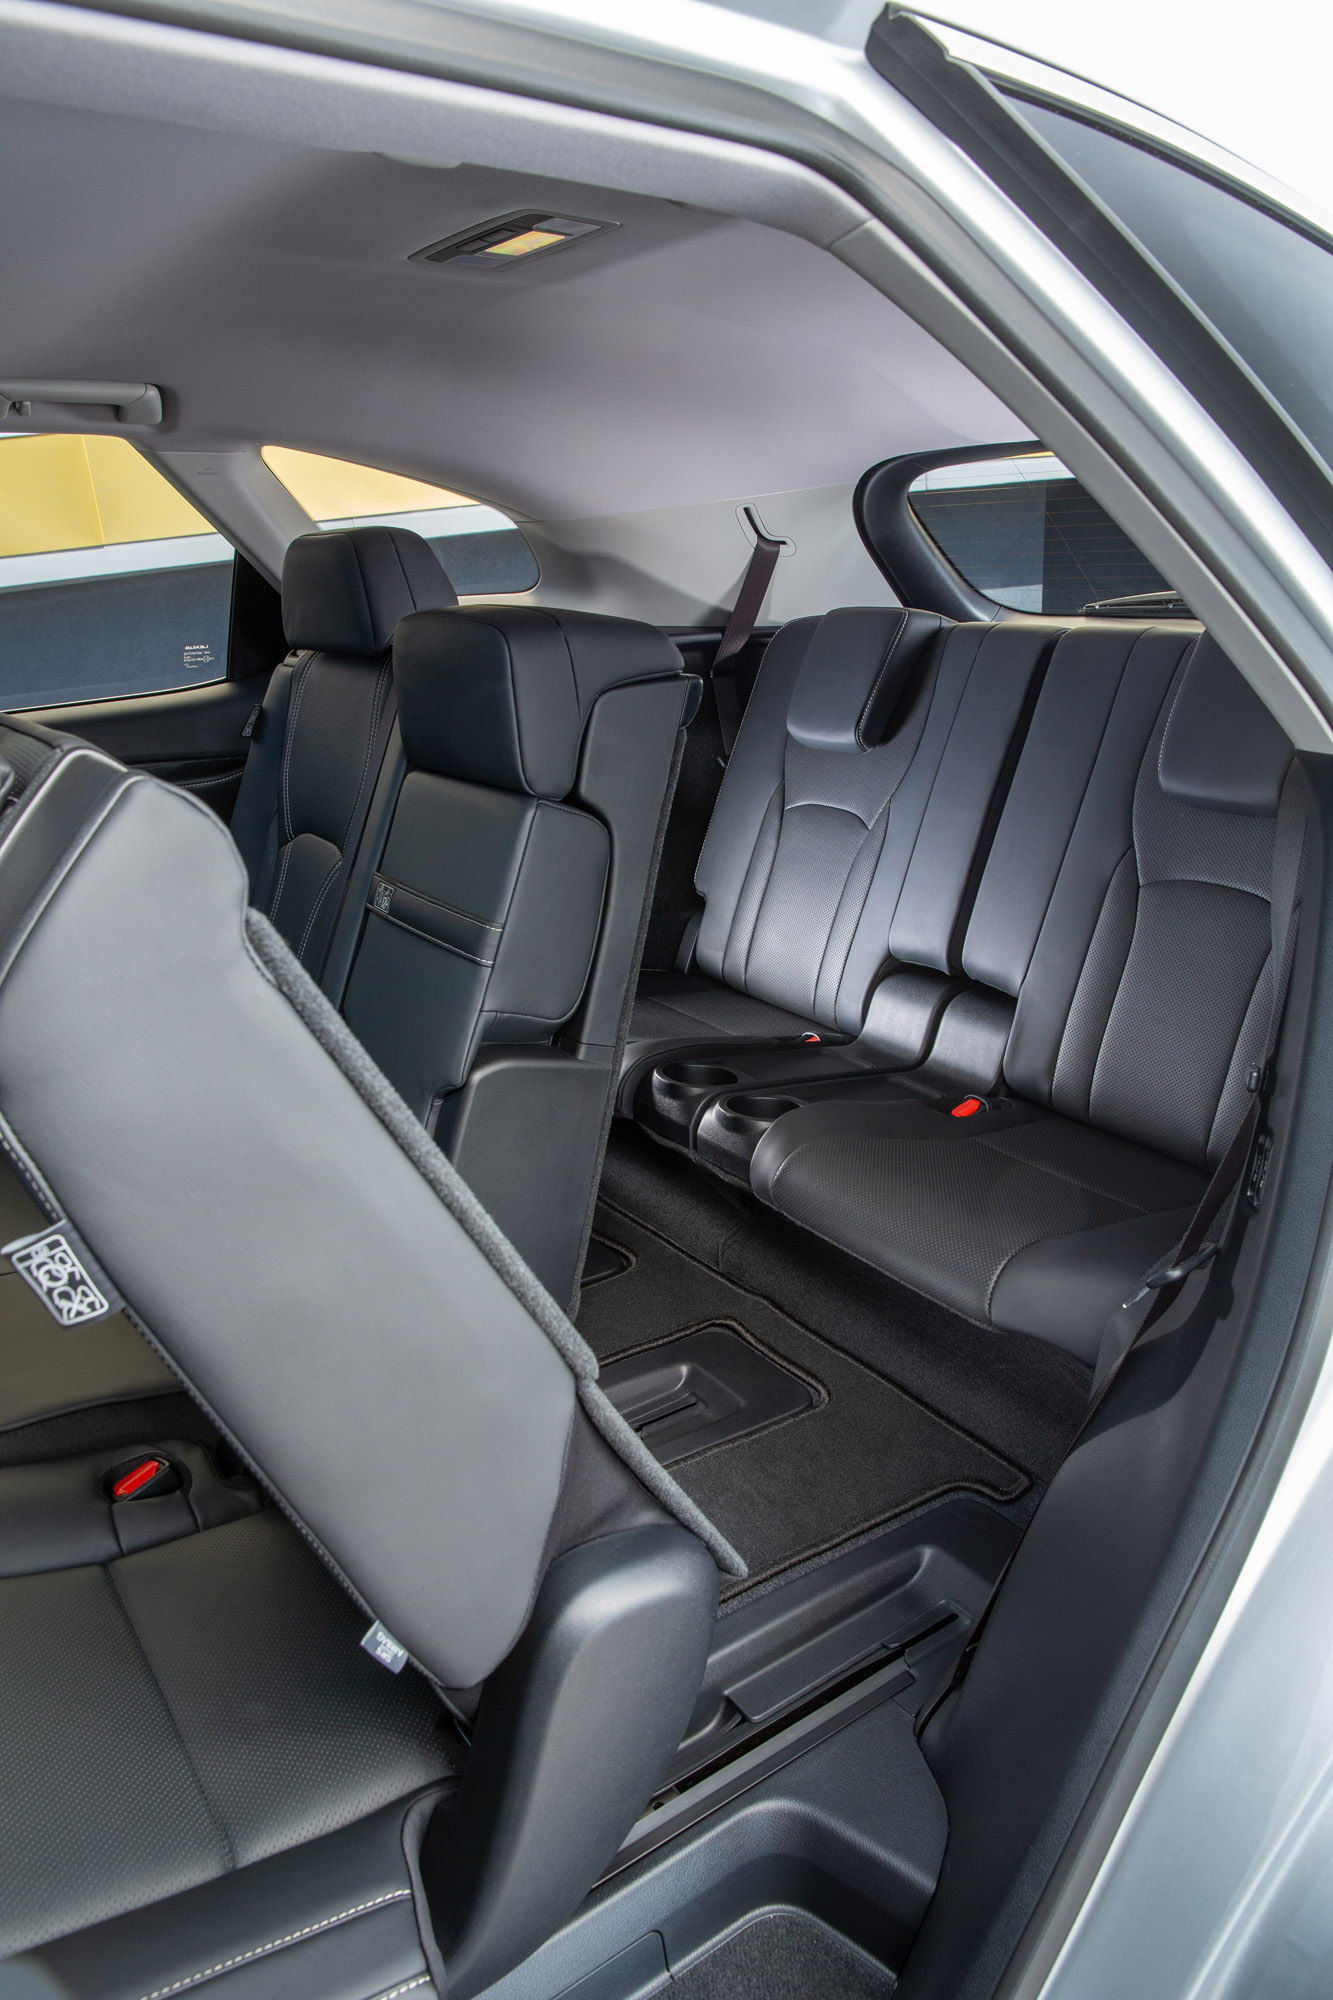 Команда Lexus представляет свой первый семиместный автомобиль для британской аудитории и демонстрирует некоторые его особенности.